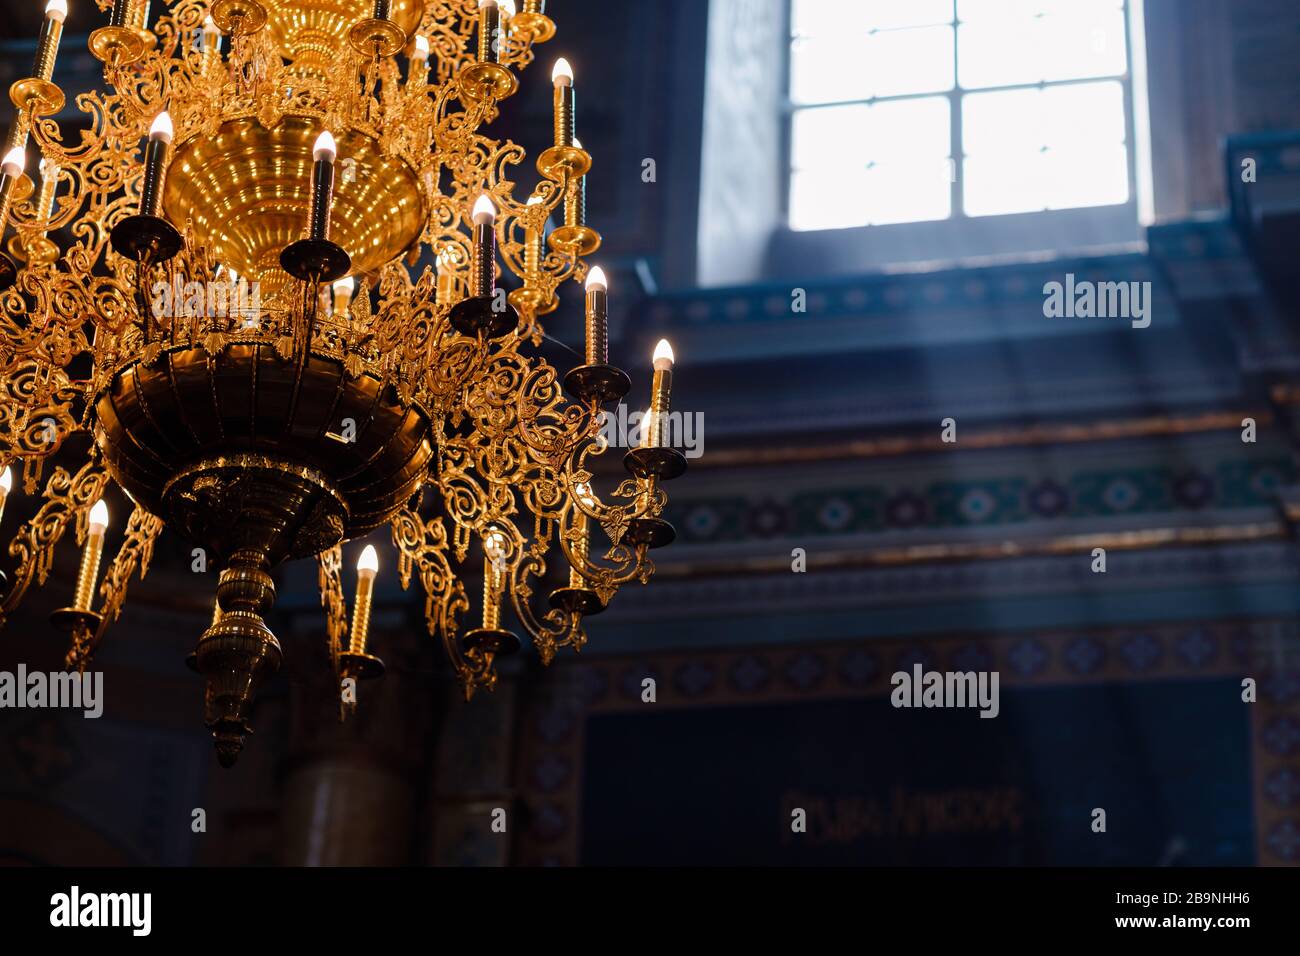 Grande lampadario in bronzo con candele elettriche nella chiesa cristiana cattedrale. Luce naturale dalla finestra della chiesa. Fuoco selettivo Foto Stock